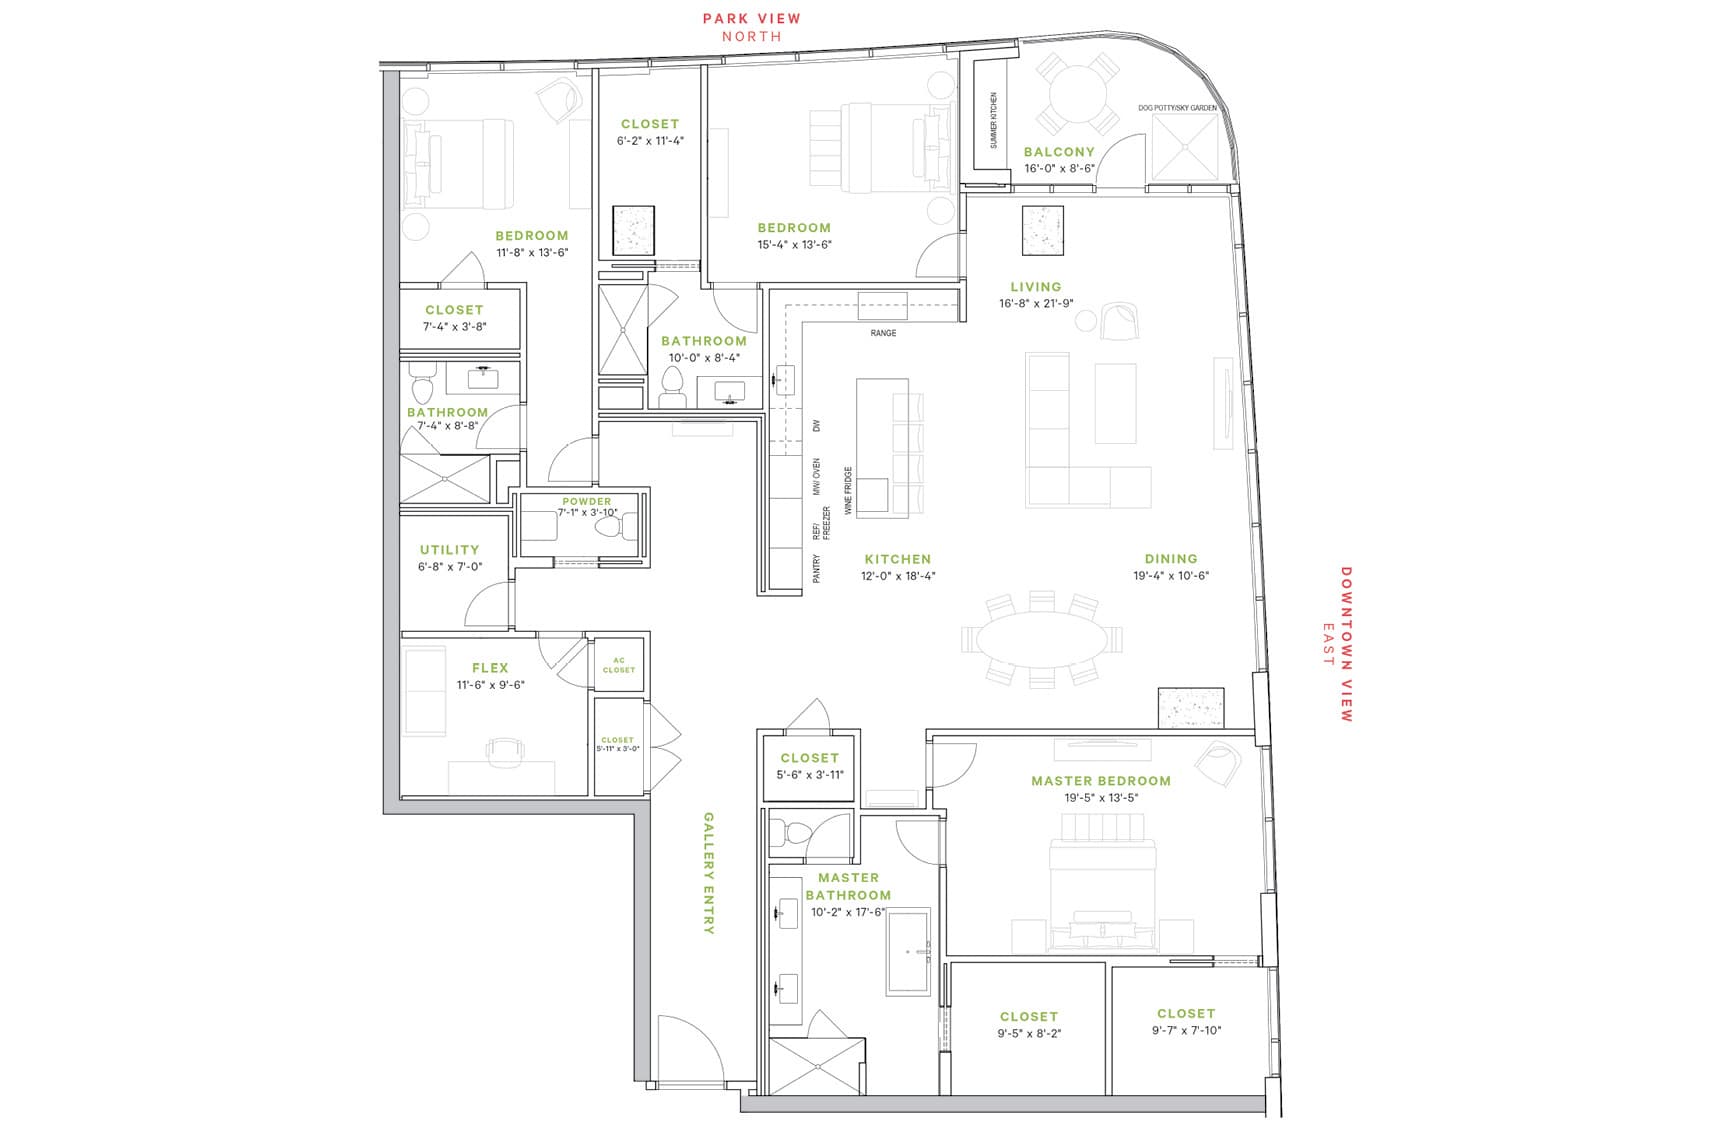 Complete view of heights condominium floorplan